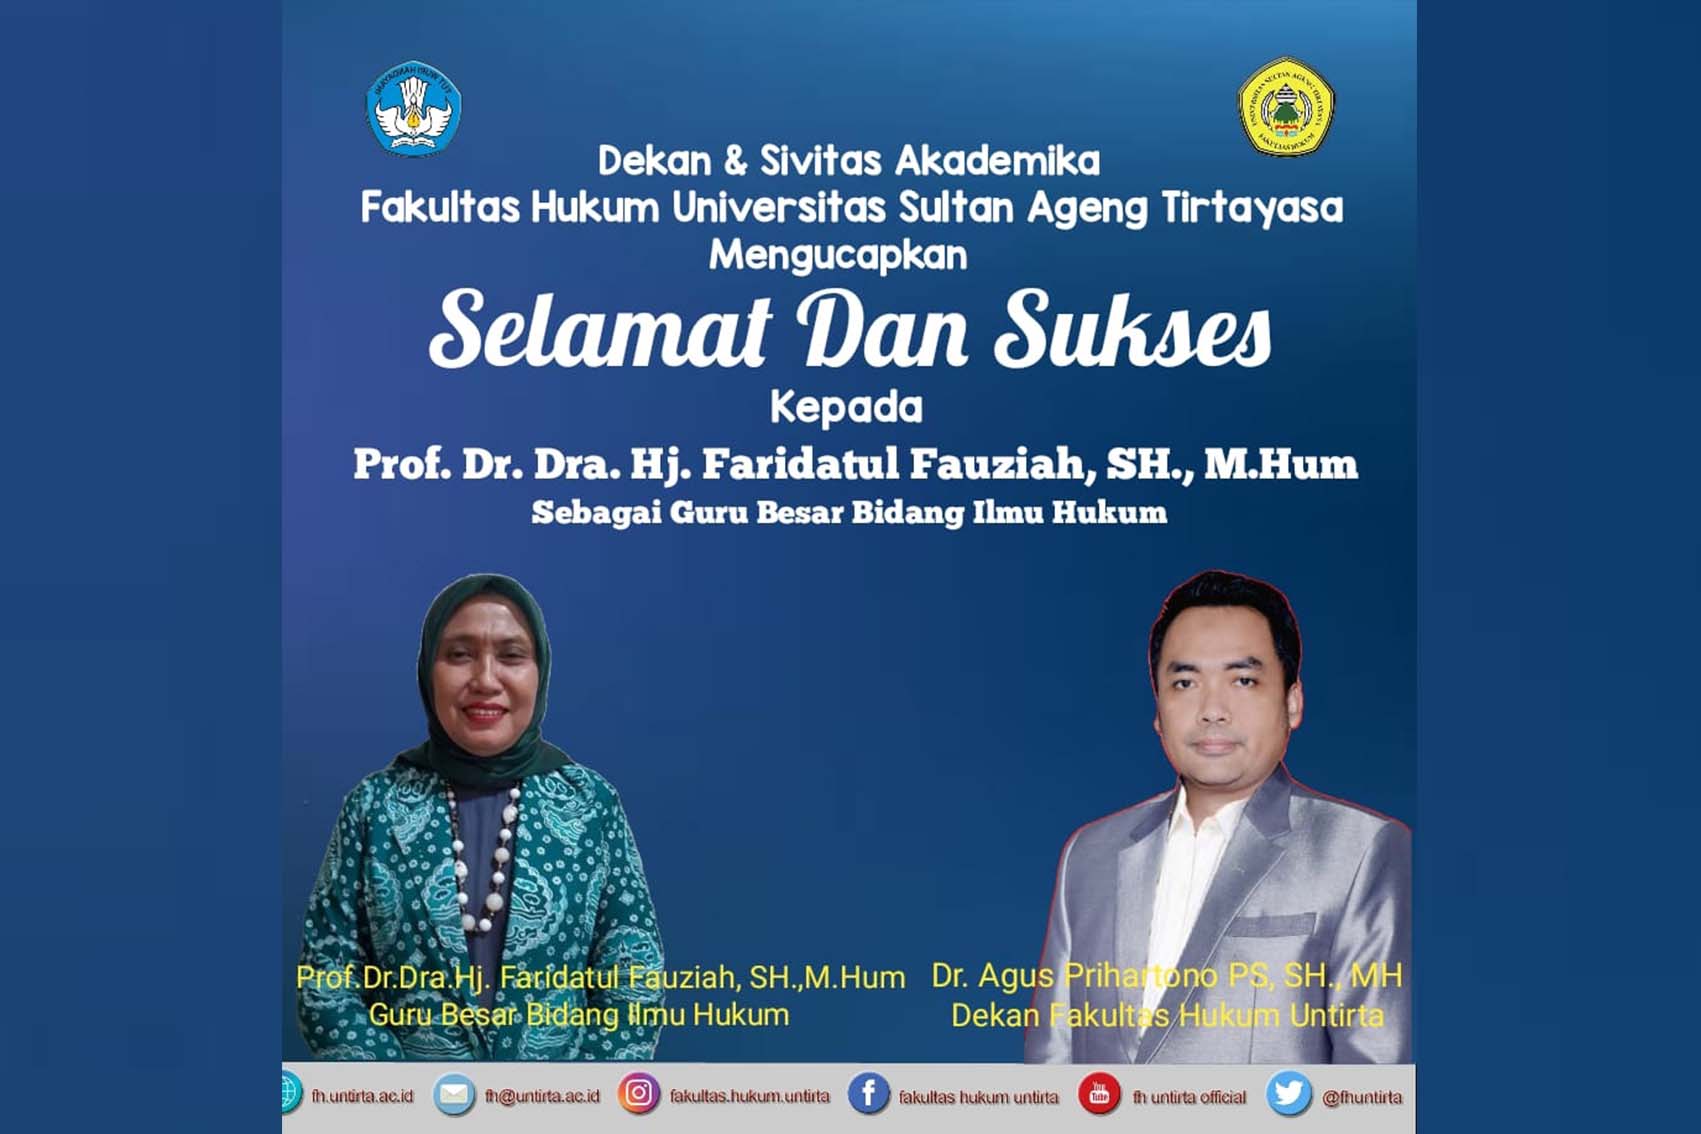 FH Untirta Mengucapkan Selamat dan Sukses kepada Prof. Dr. Dra. Hj. Faridatul Fauziah, SH., M. Hum